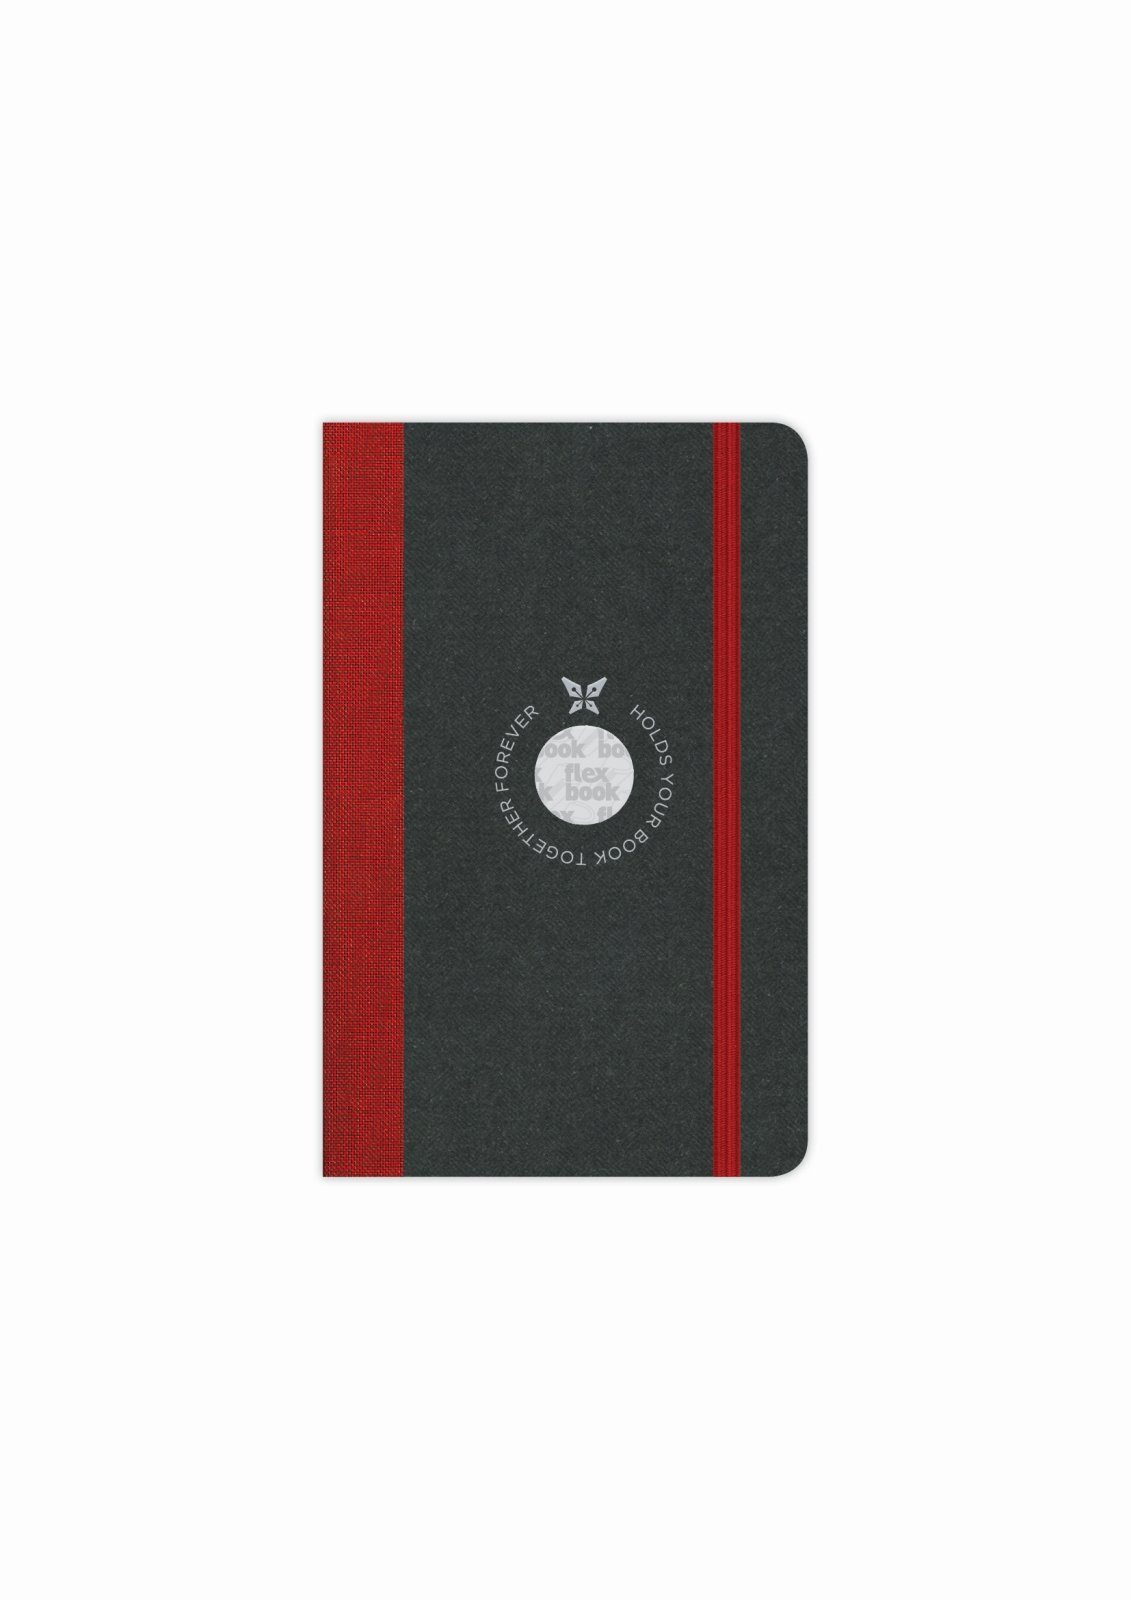 blanko/linierte verschied Globel Notizbuch / / 9 * Notizbuch Seiten Liniert Flexbook Flexbook Elastikband cm 14 Rot